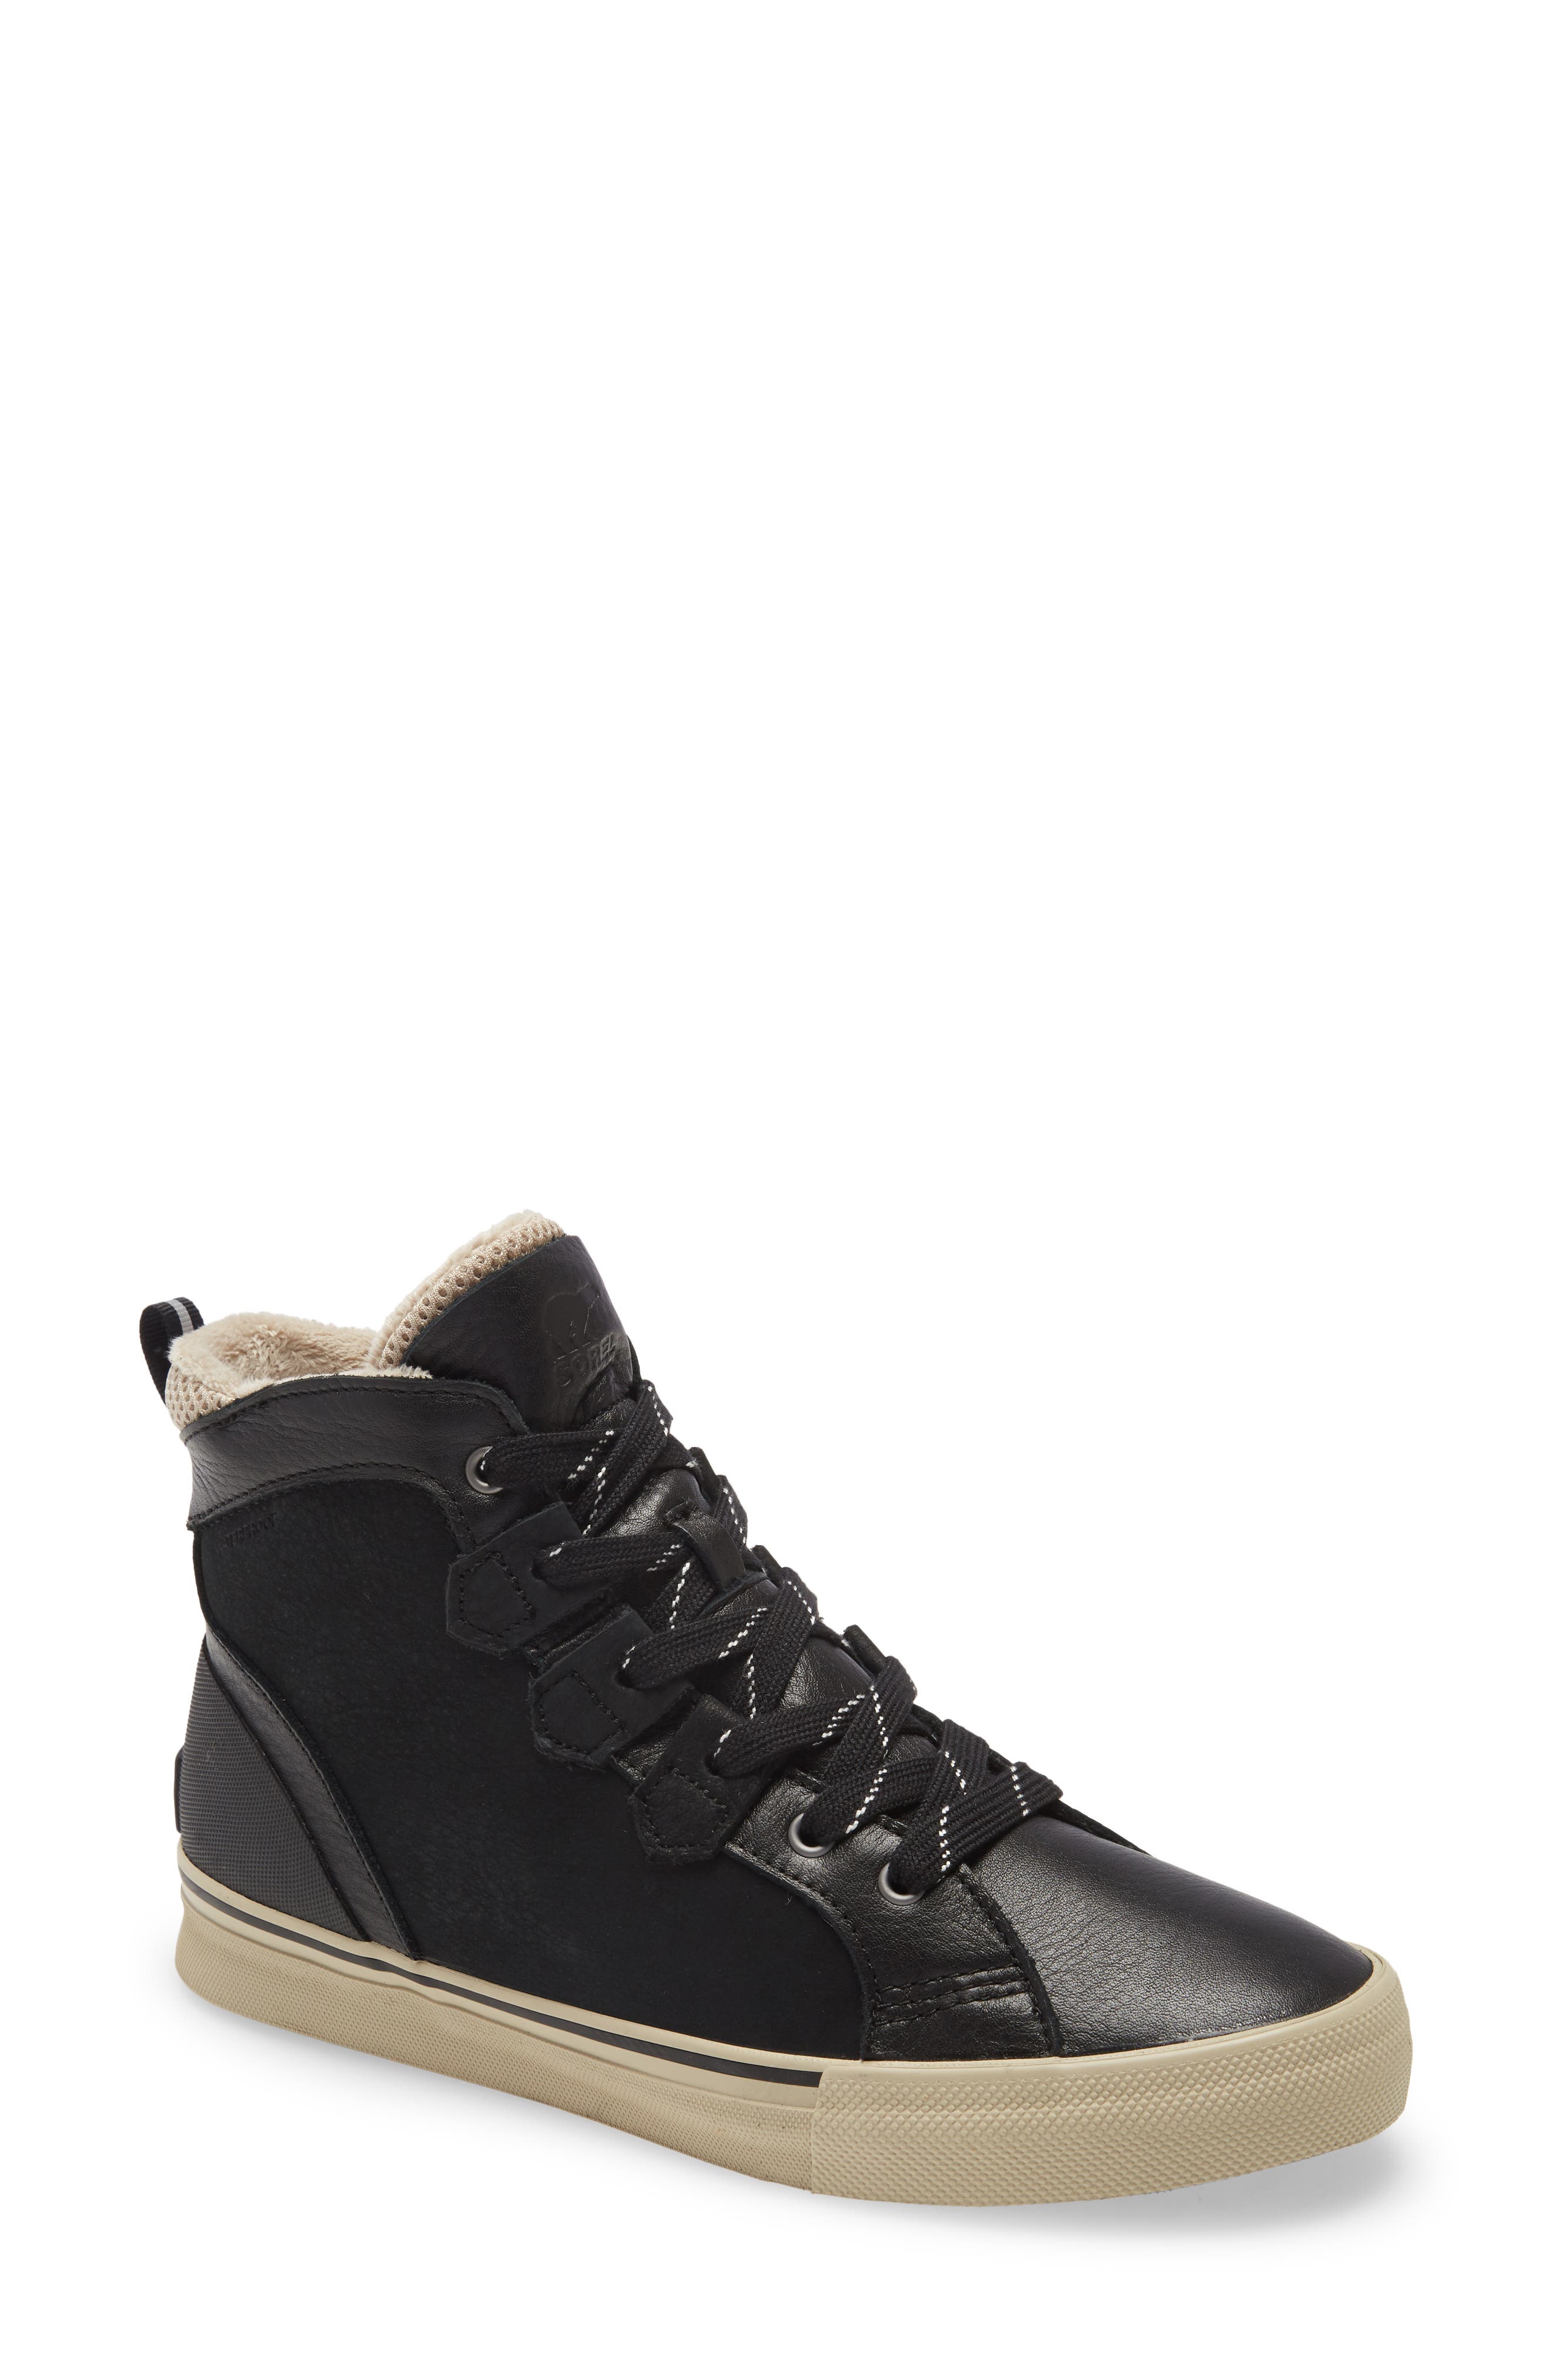 SOREL Sneakers \u0026 Athletic Shoes | Nordstrom